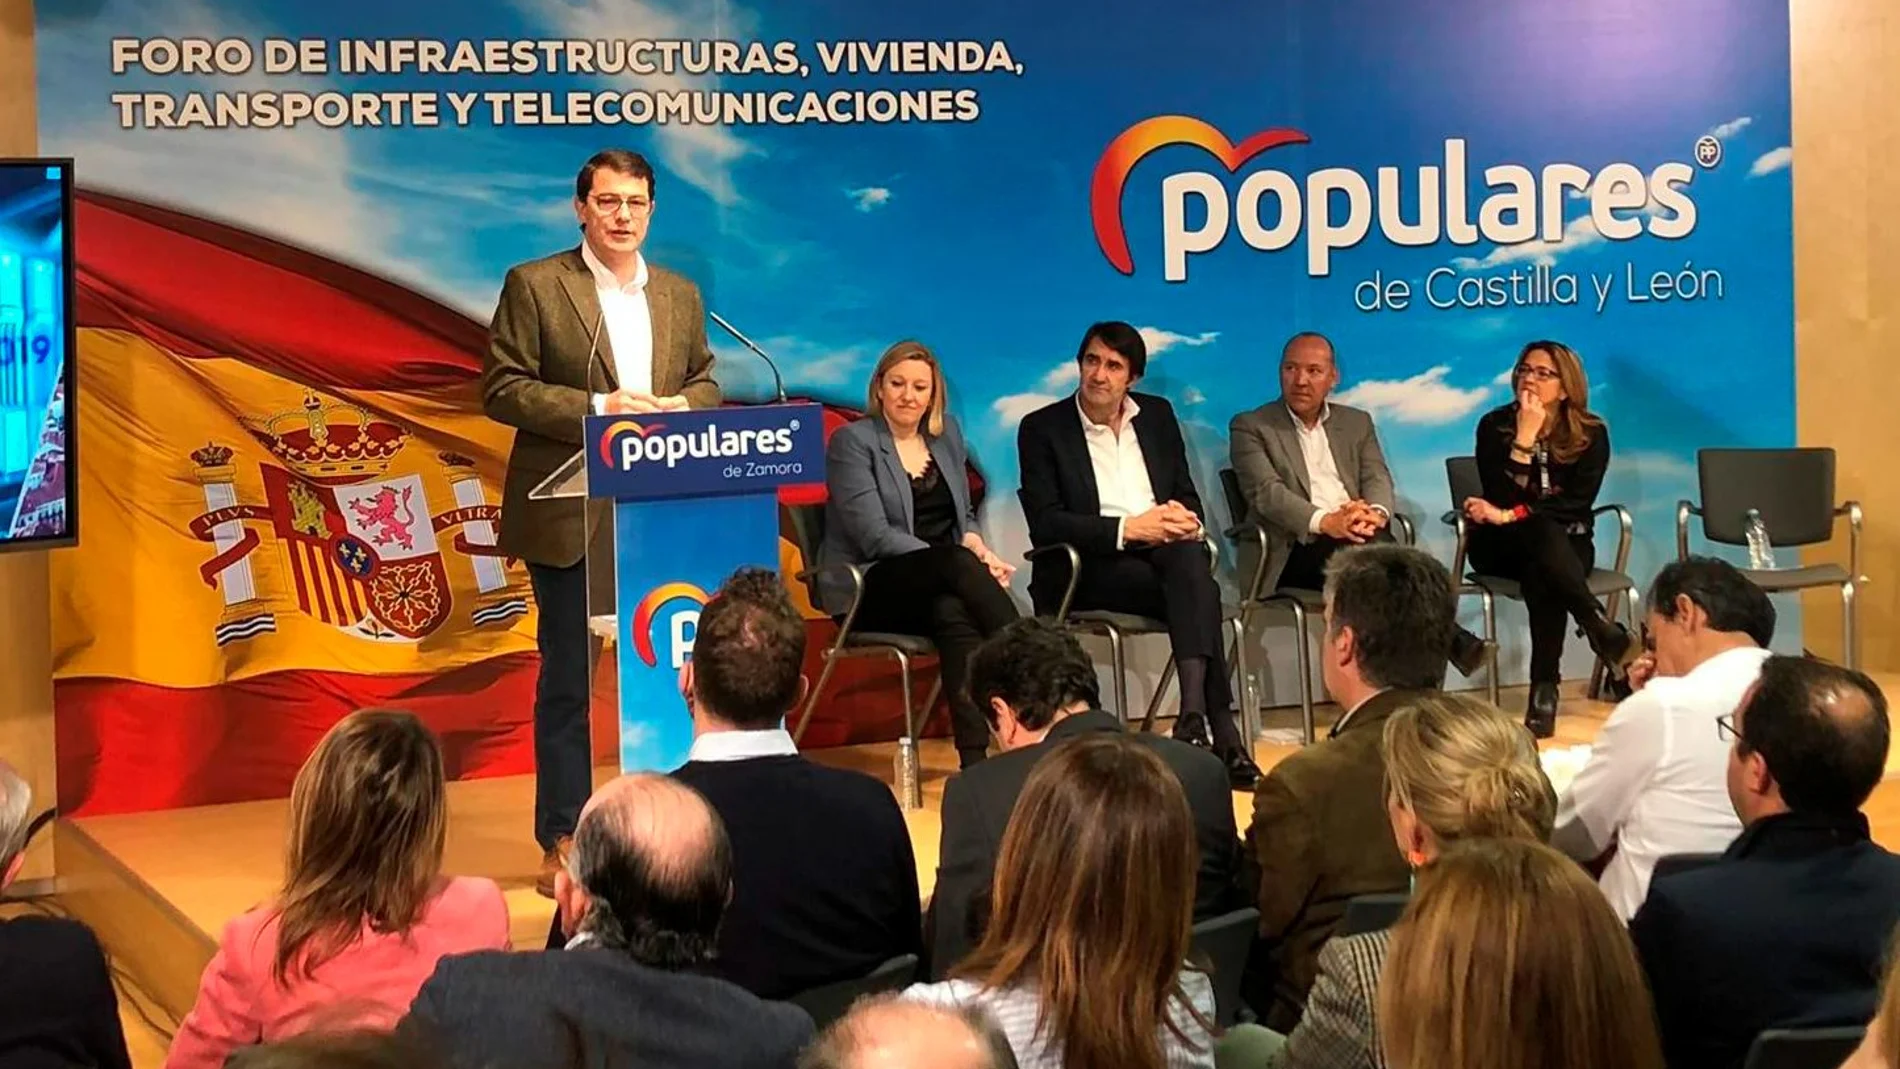 Fernández Mañueco interviene en el foro en presencia de Suárez-Quiñones, Isabel Blanco, Mayte Martín y José María Barrios